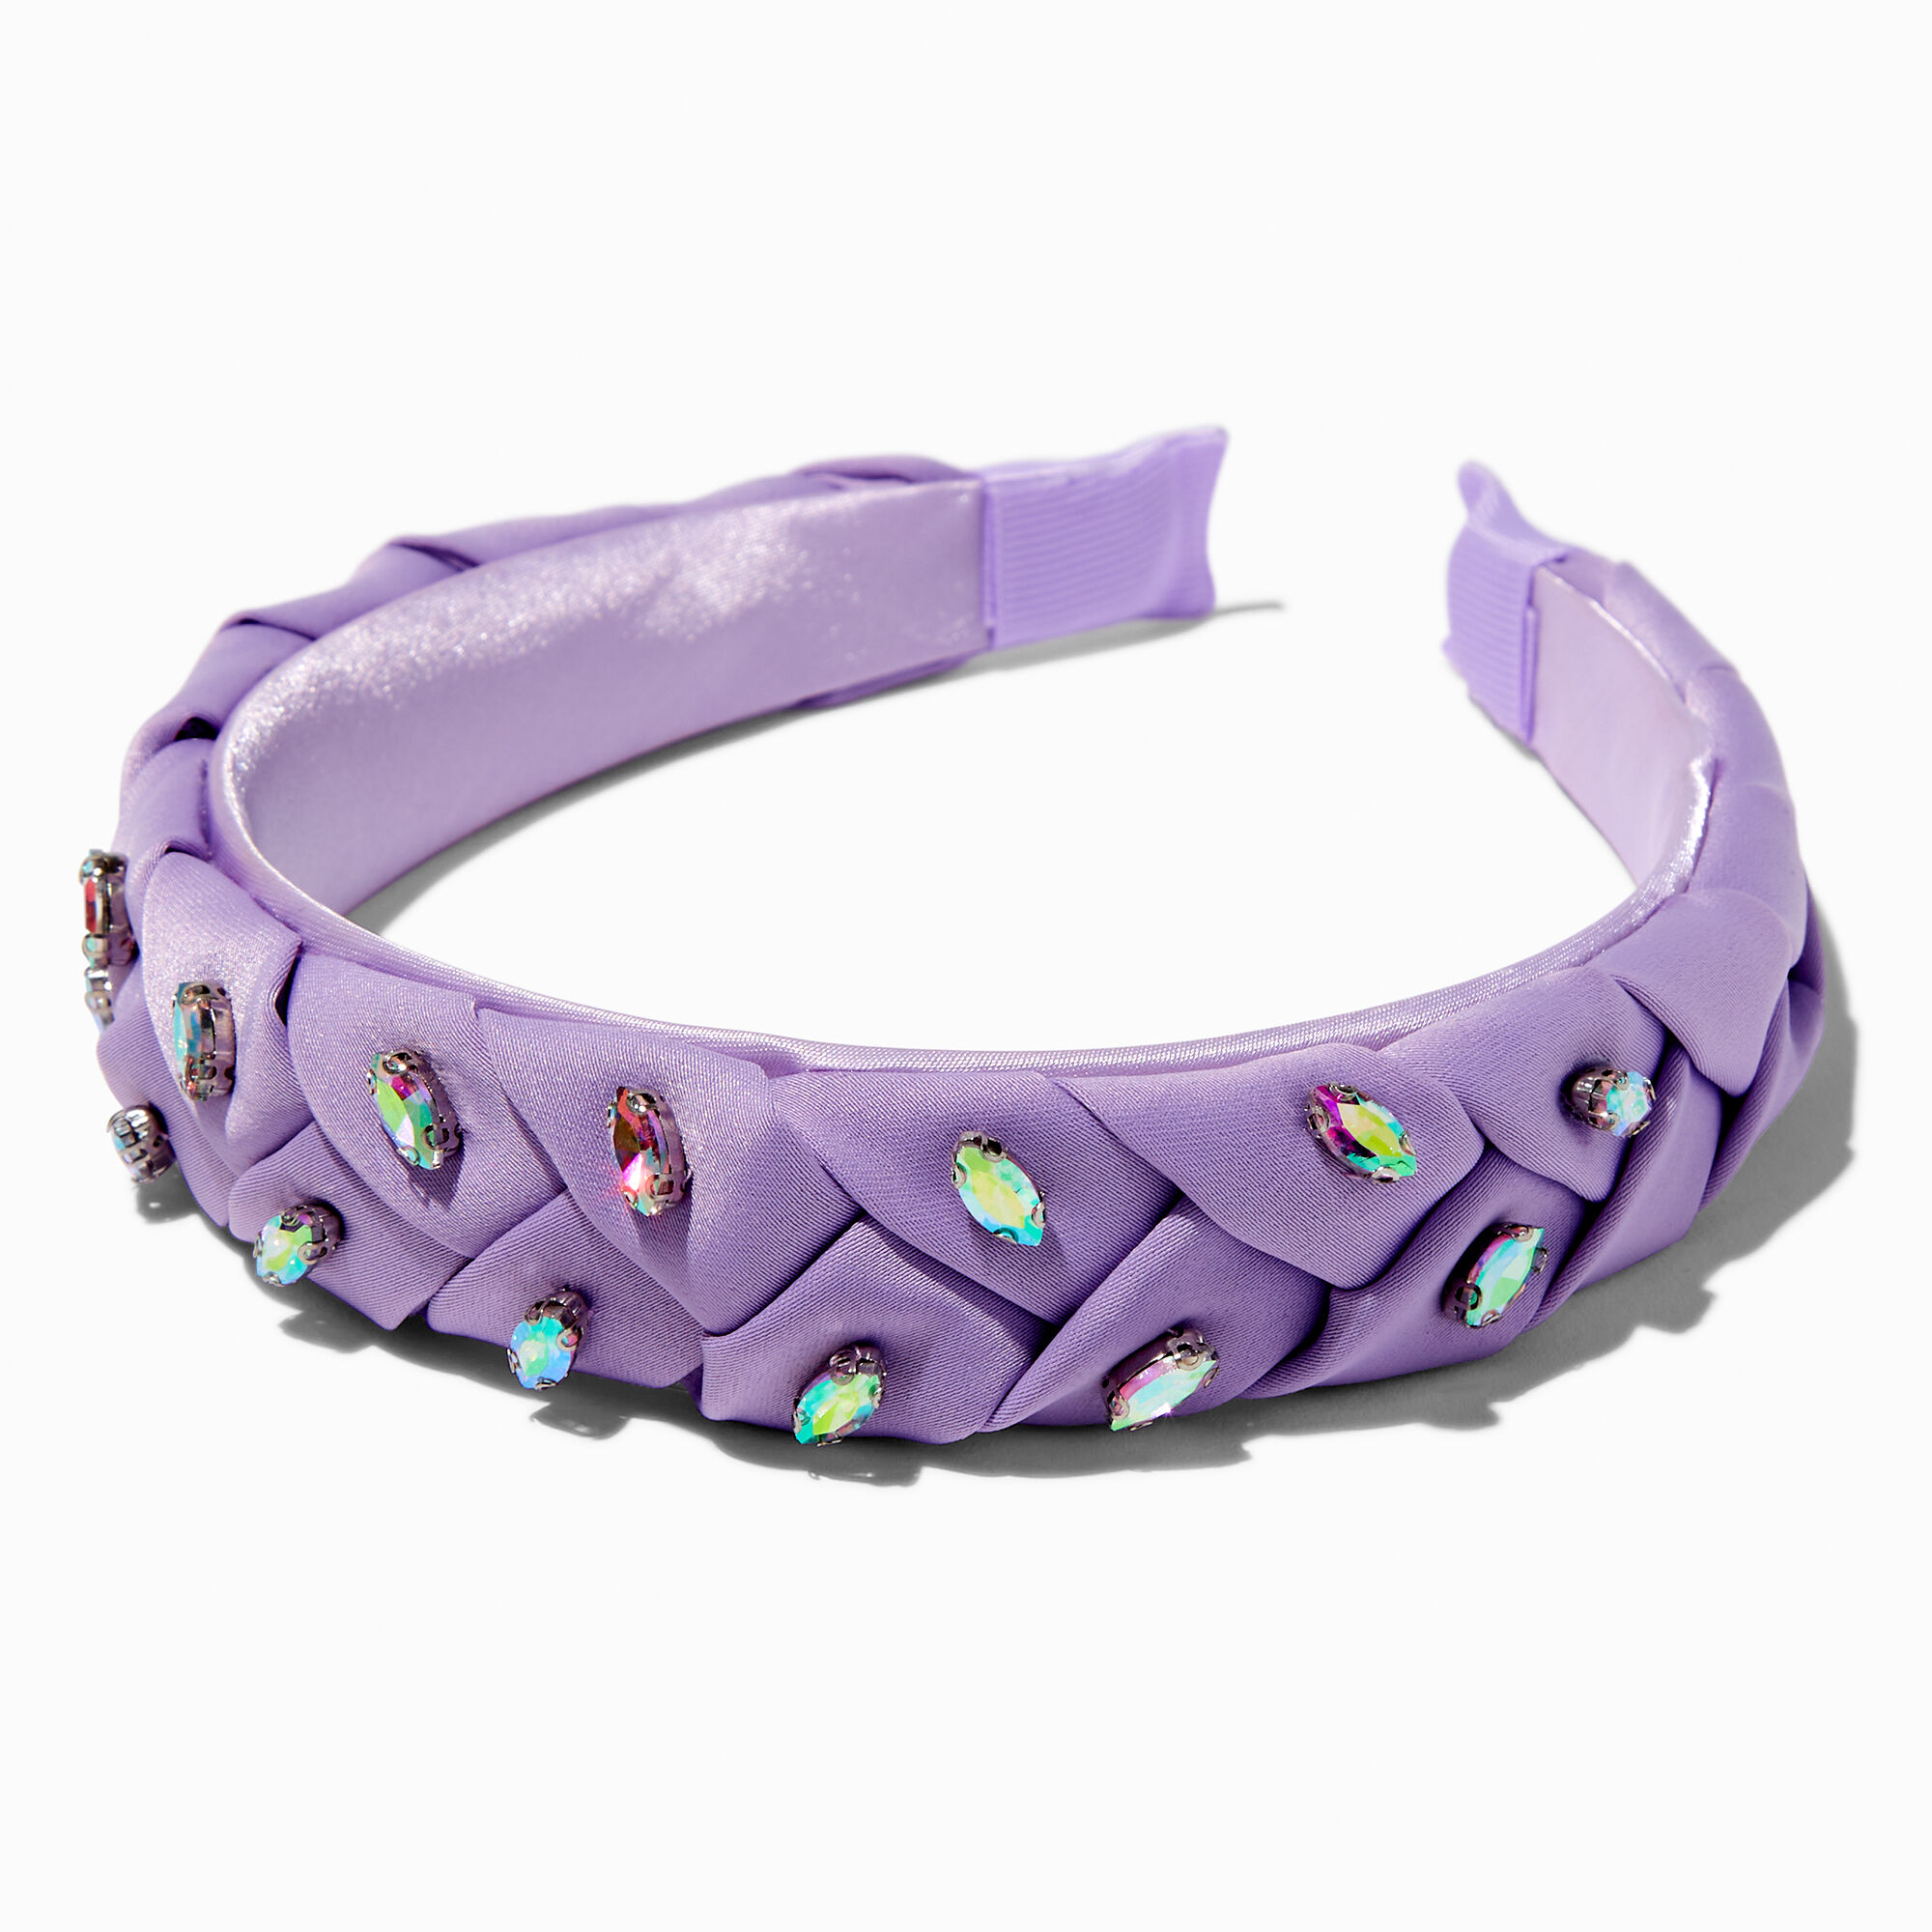 View Claires Iridescent Gemstone Braided Headband Purple information